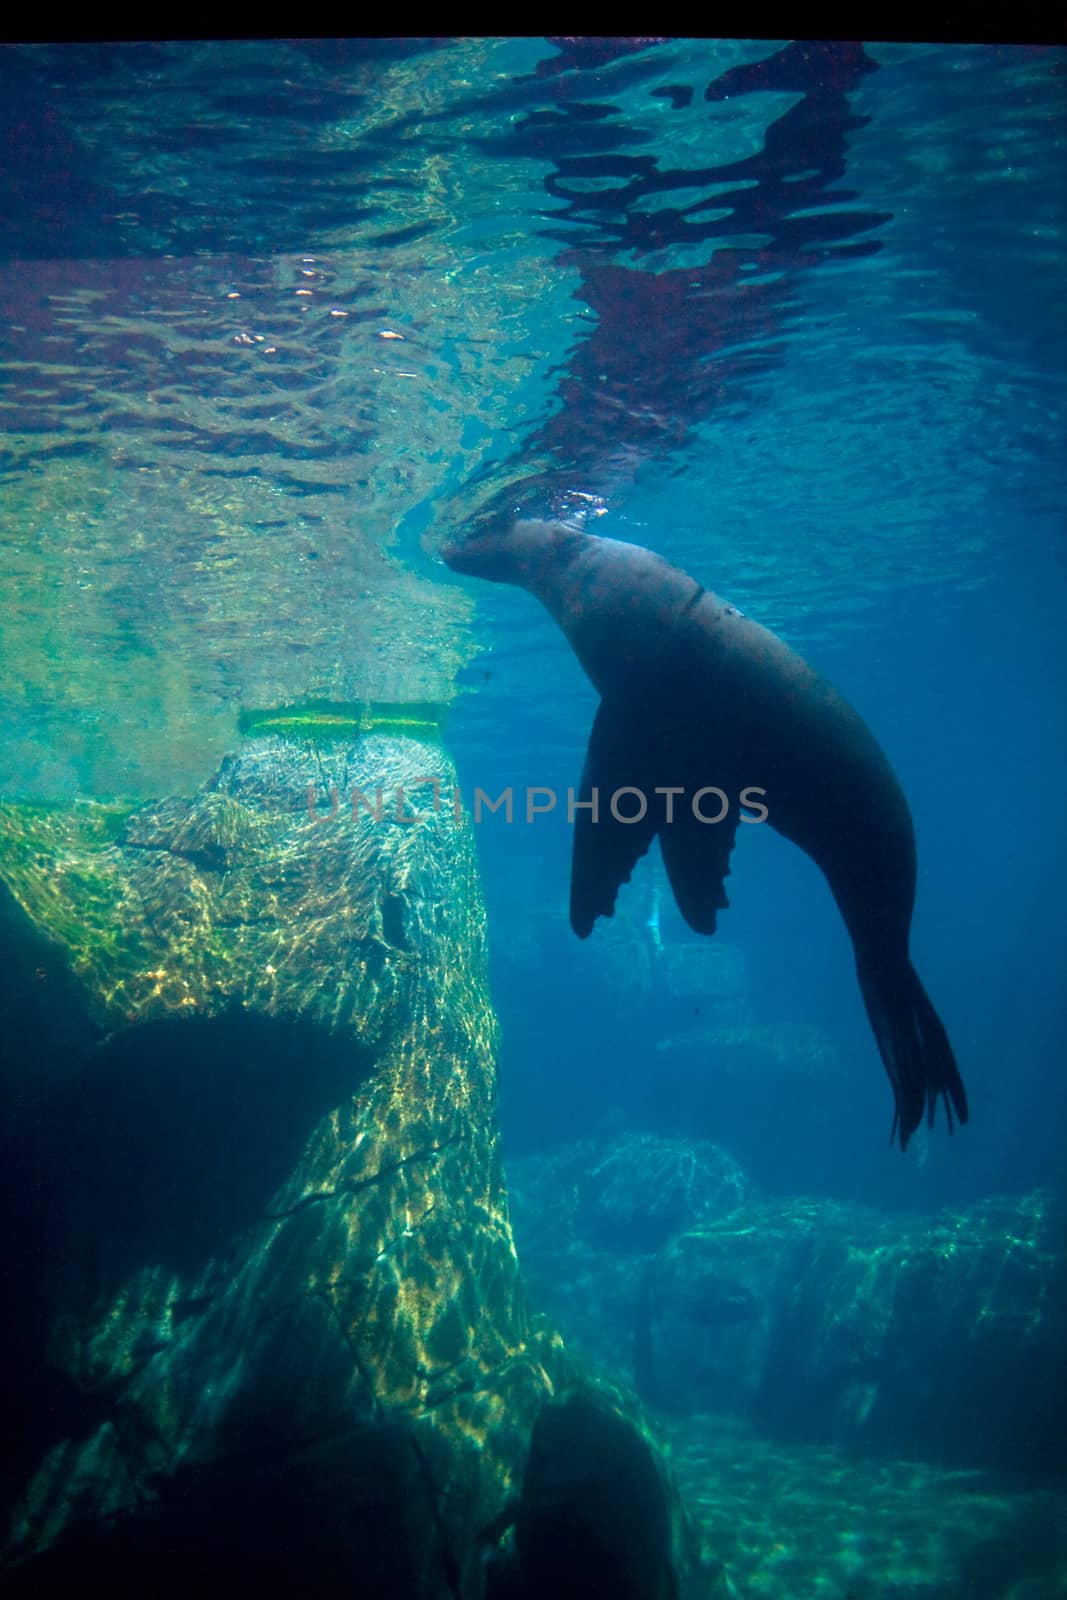 Underwater View of Sea Lion by NikkiGensert